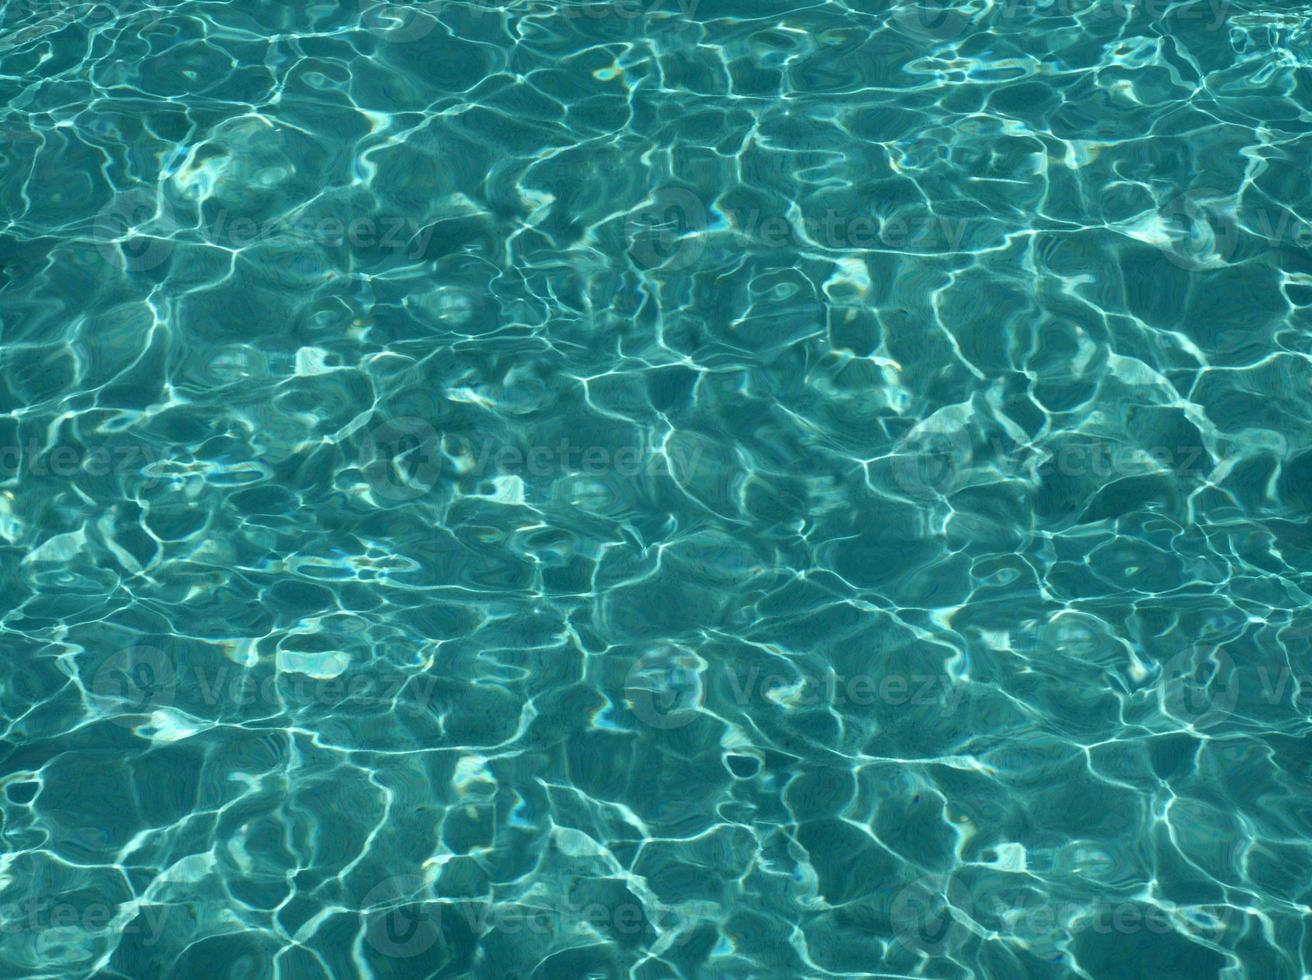 zwembad met wasser en glazen op de grond grund foto